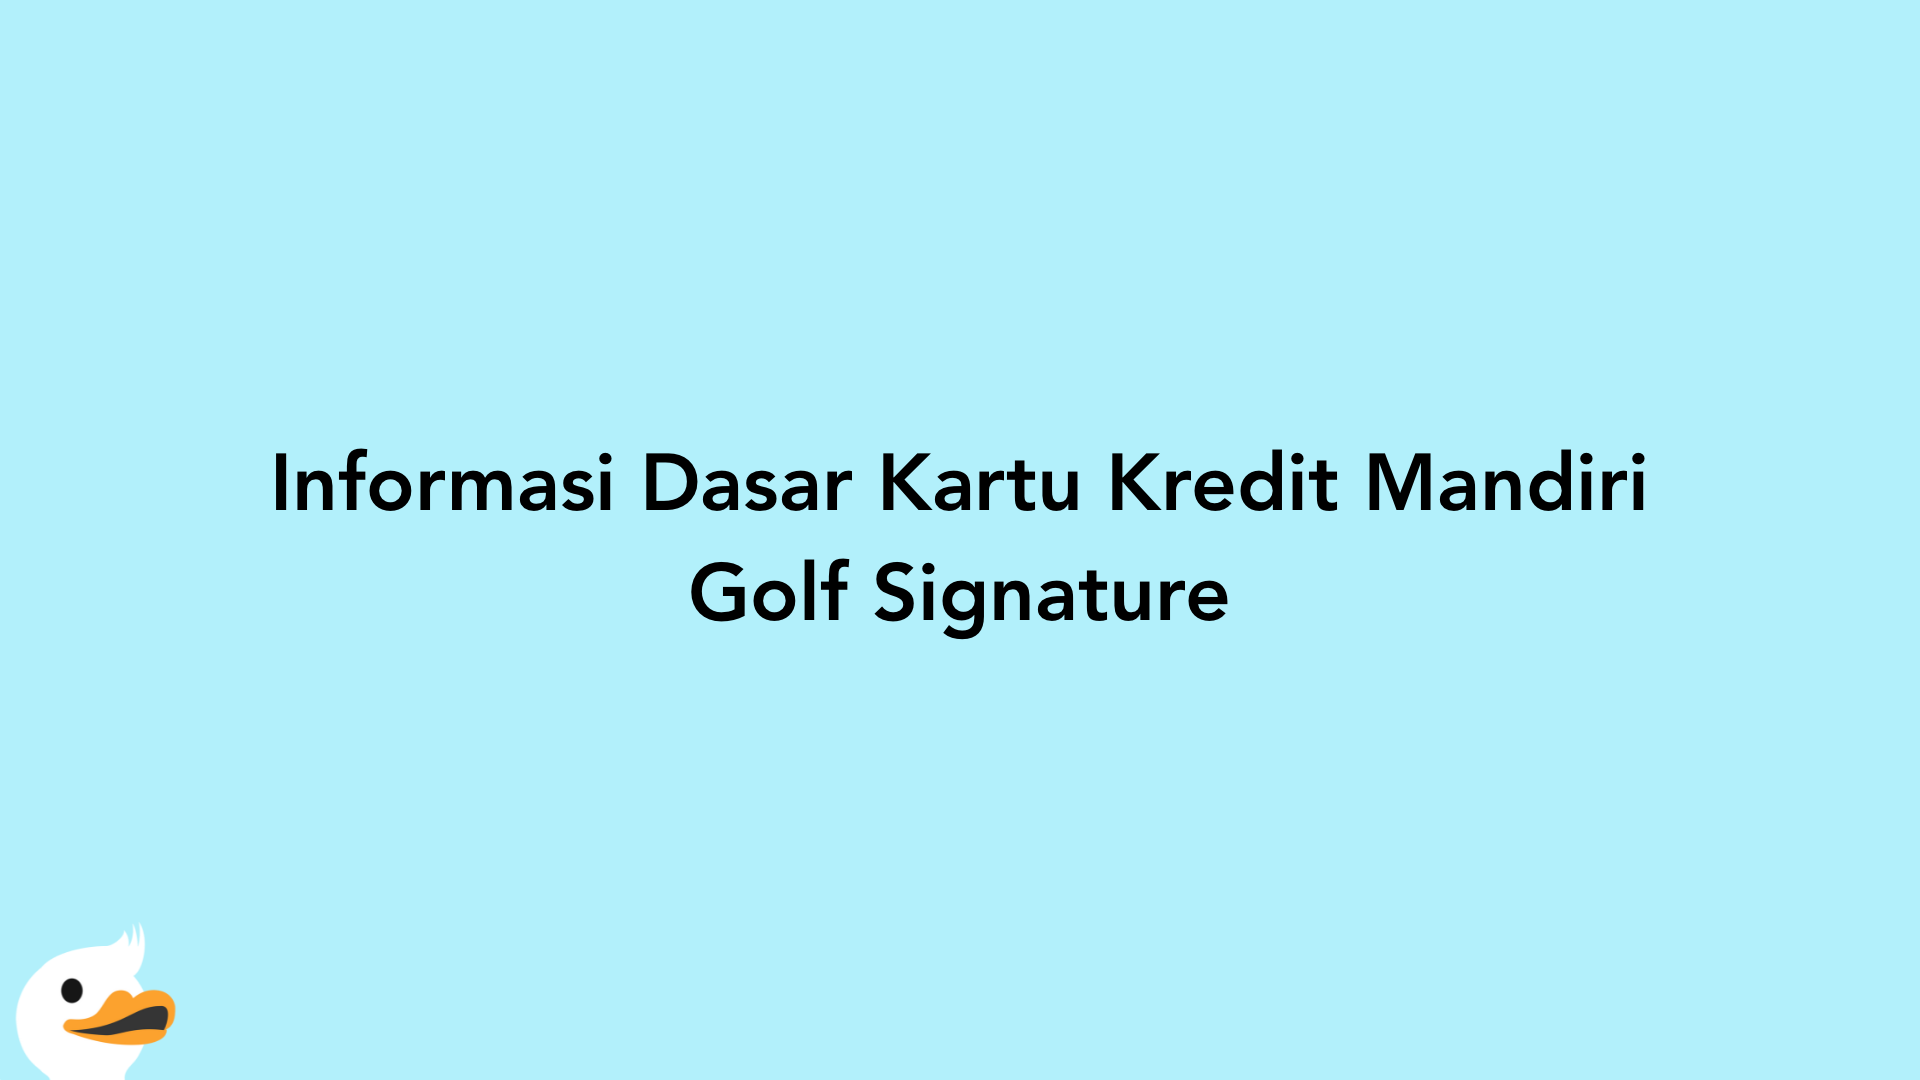 Informasi Dasar Kartu Kredit Mandiri Golf Signature